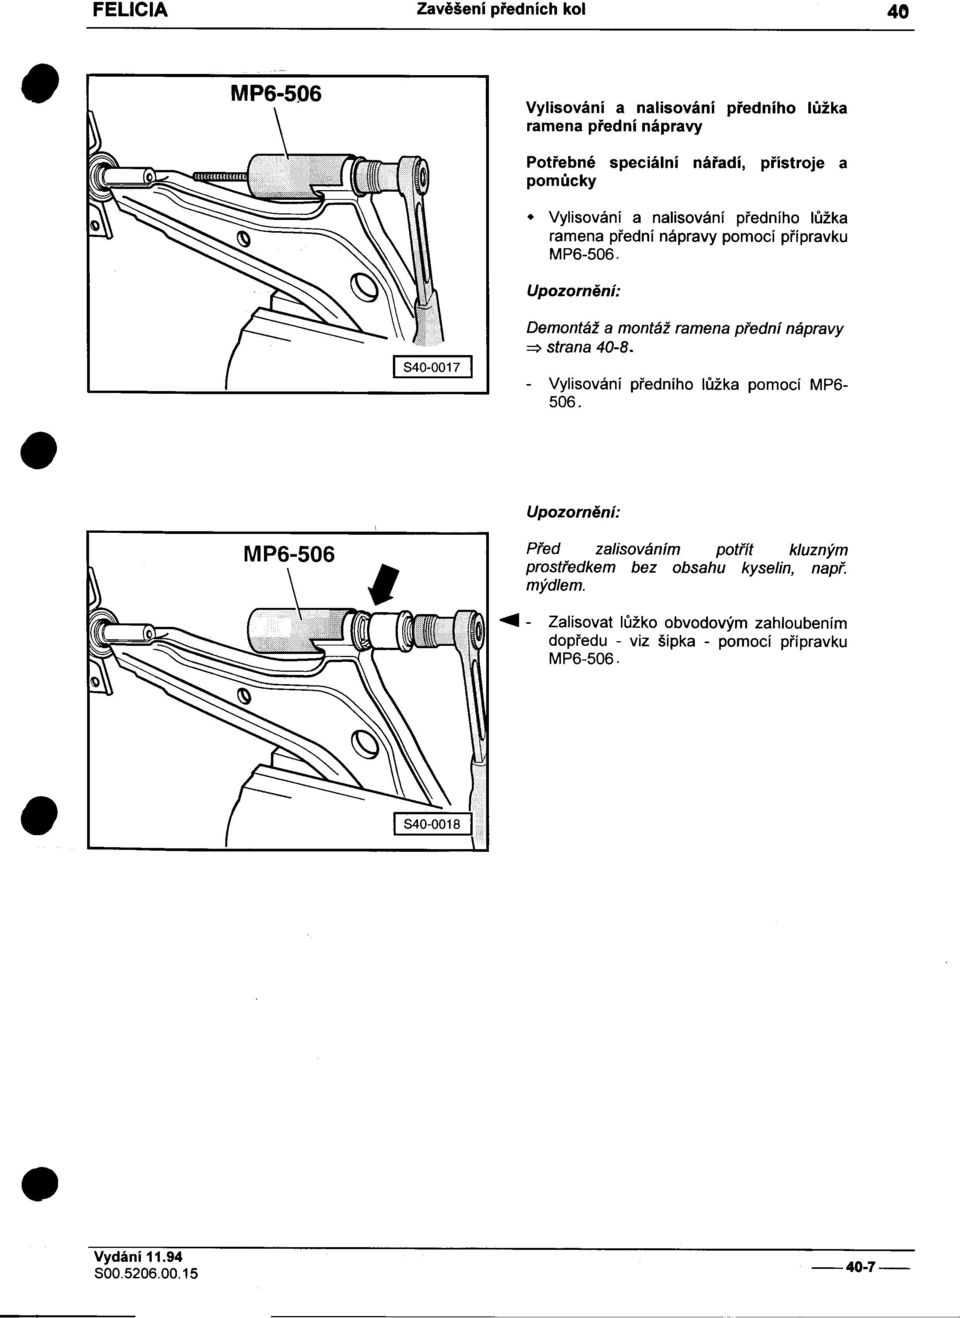 Demontáž a montáž ramena pøední nápravy => strana 40-8 -Vylisování pøedního lùžka pomocí MP6-506 M P6-506 Pøed zalisováním potøít kluzným